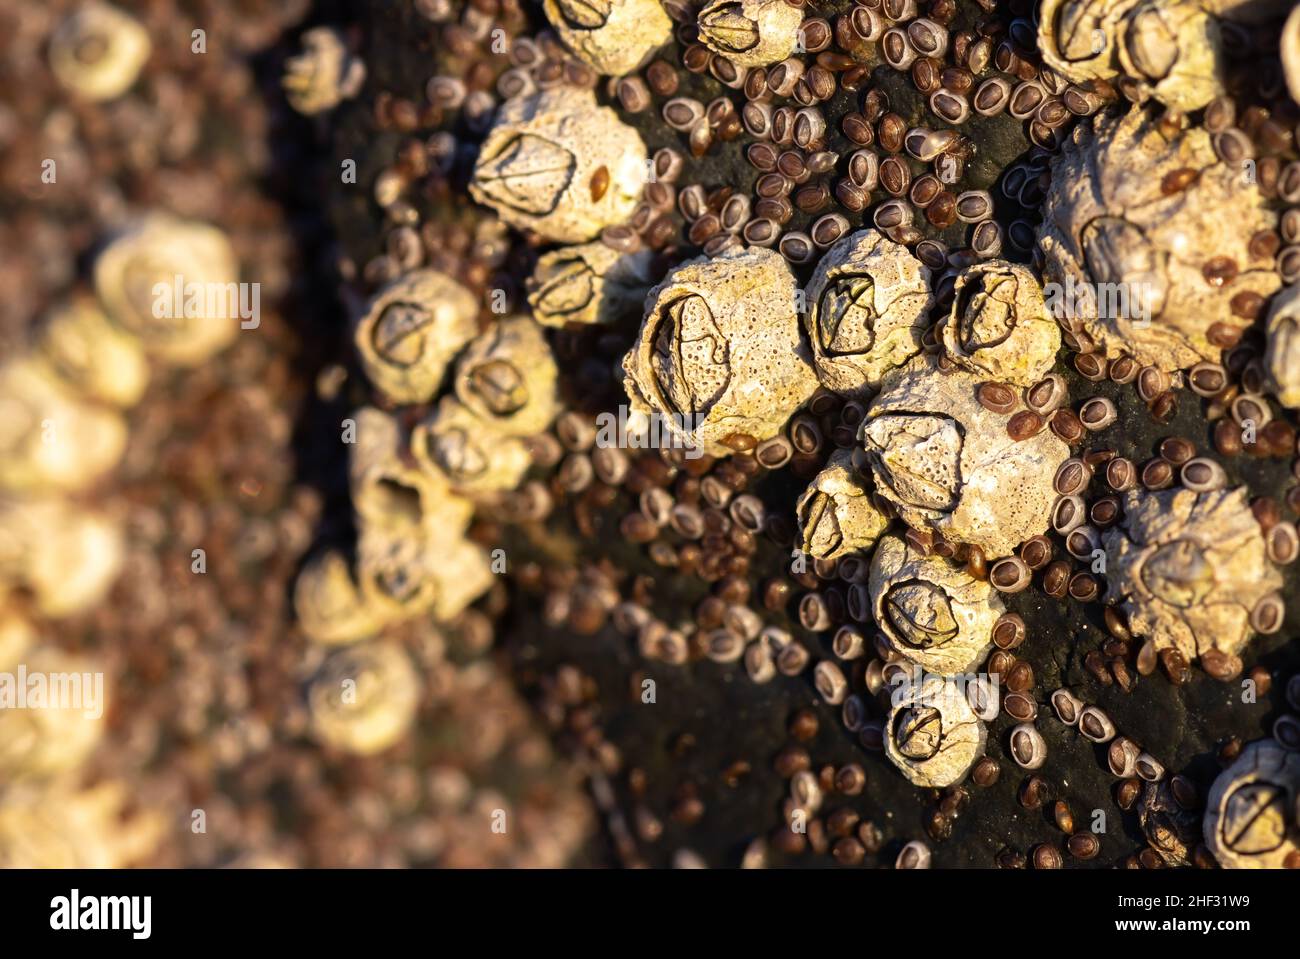 Closeup of Acorn barnacles (Semibalanus balanoides) Stock Photo